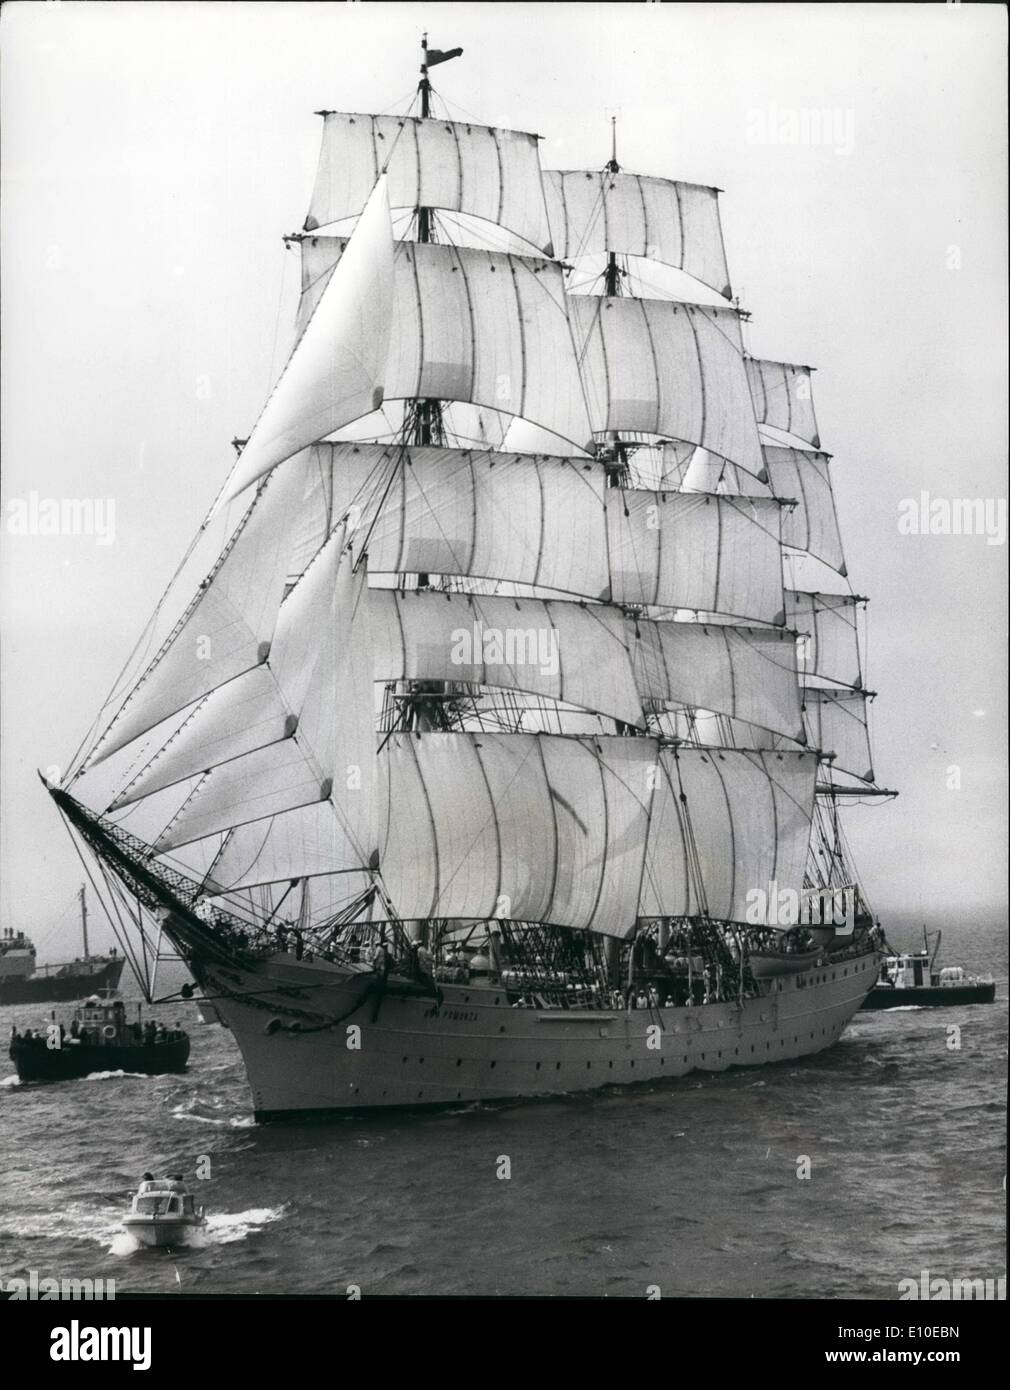 Agosto 08, 1972 - Los barcos parten desde el Solent en la Tall Ships Race.: Uno de los mayores buques que partió desde el Solent hoy en la Tall Ships Race desde el Solent a la Skaw, Jutlandia,fue el 'Dar Pomorza', de Polonia. Foto de stock